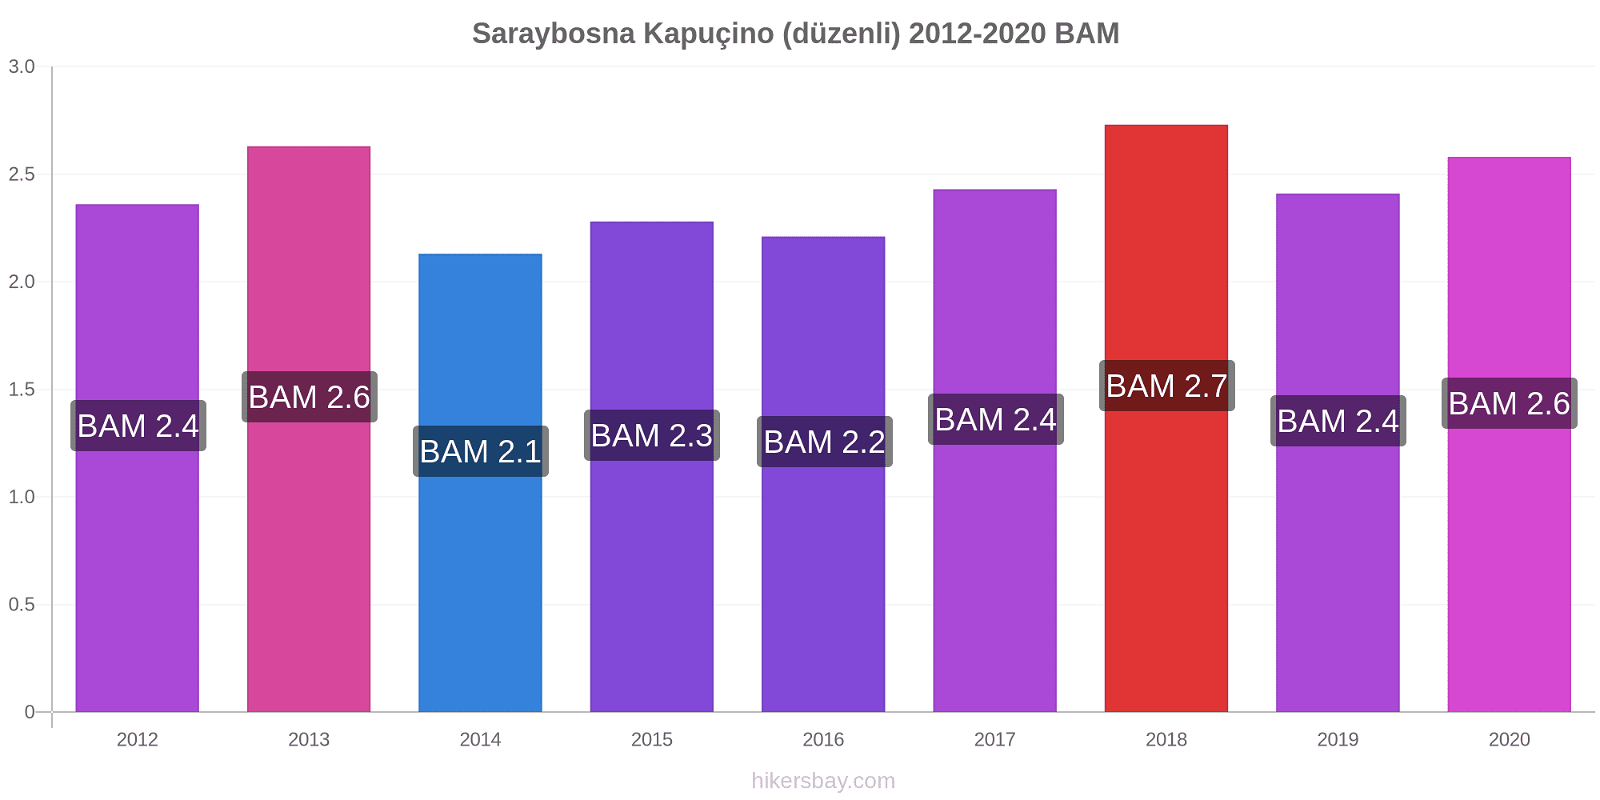 Saraybosna fiyat değişiklikleri Kapuçino (düzenli) hikersbay.com